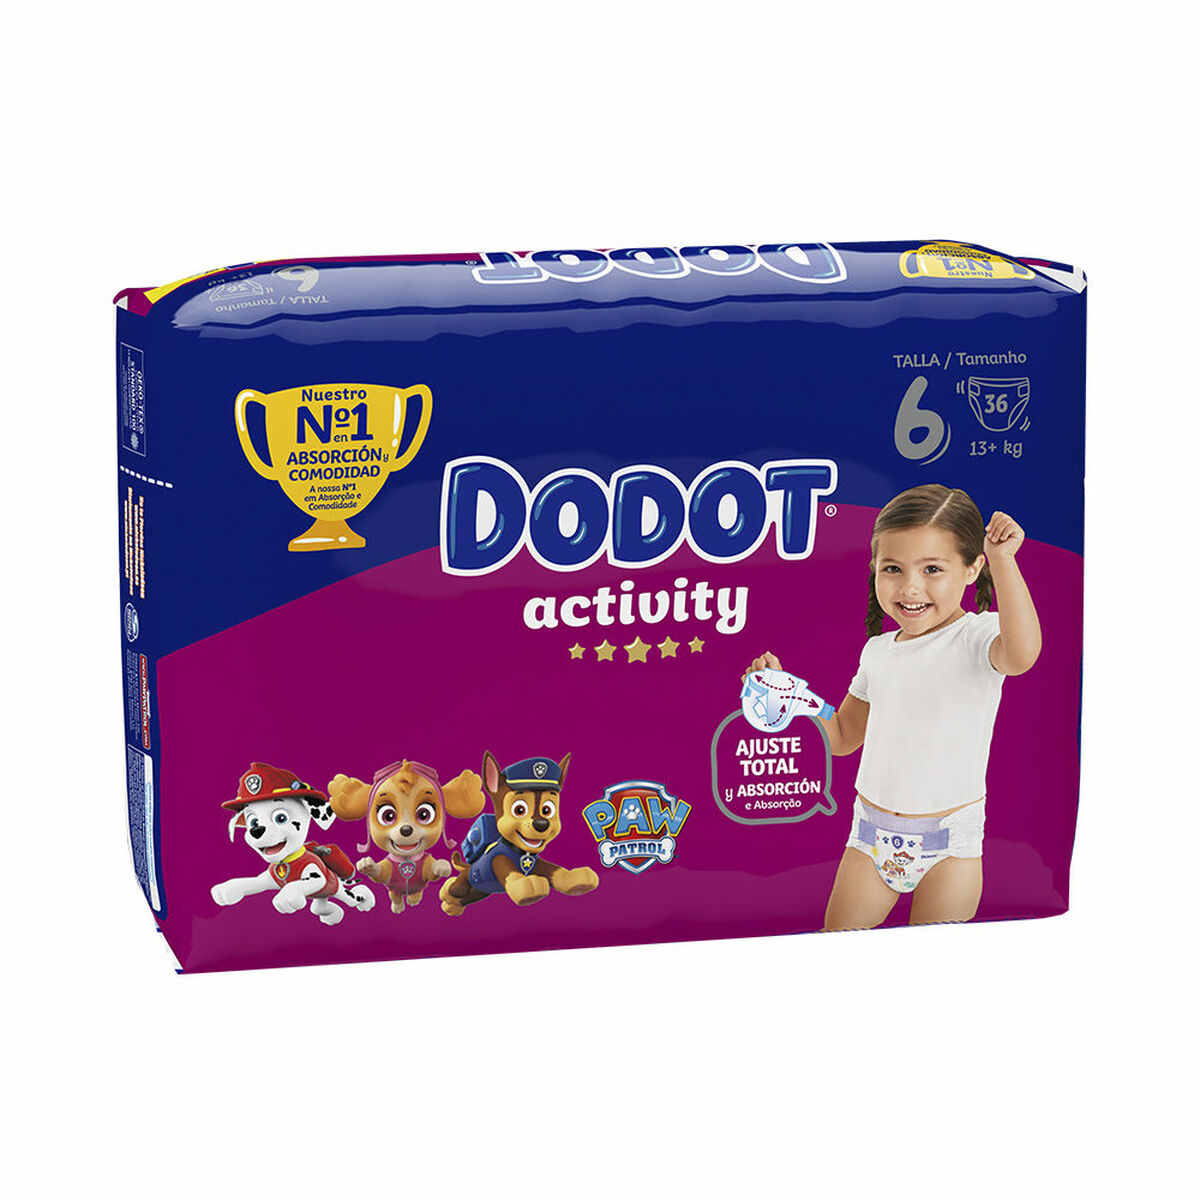 Dodot Dodot Sensitive Pañales de la talla 1, para niños de 2 a 5 kilogramos  84 uds. 84 uds